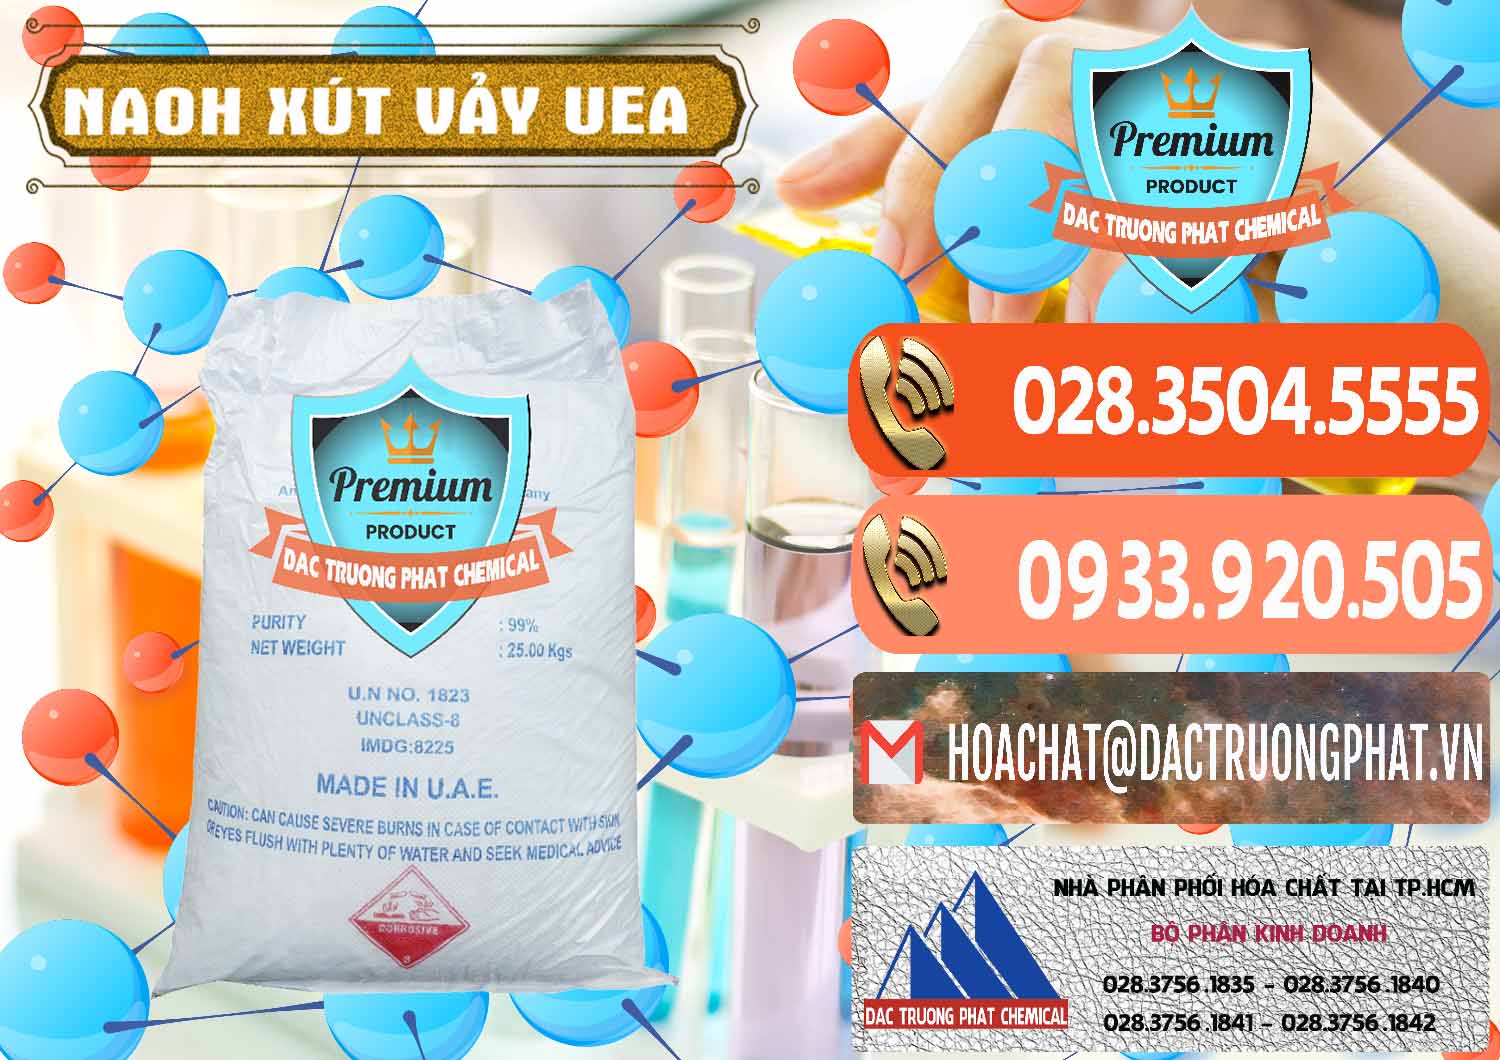 Cty chuyên cung ứng _ bán Xút Vảy - NaOH Vảy UAE Iran - 0432 - Công ty chuyên cung cấp ( kinh doanh ) hóa chất tại TP.HCM - hoachatmientay.com